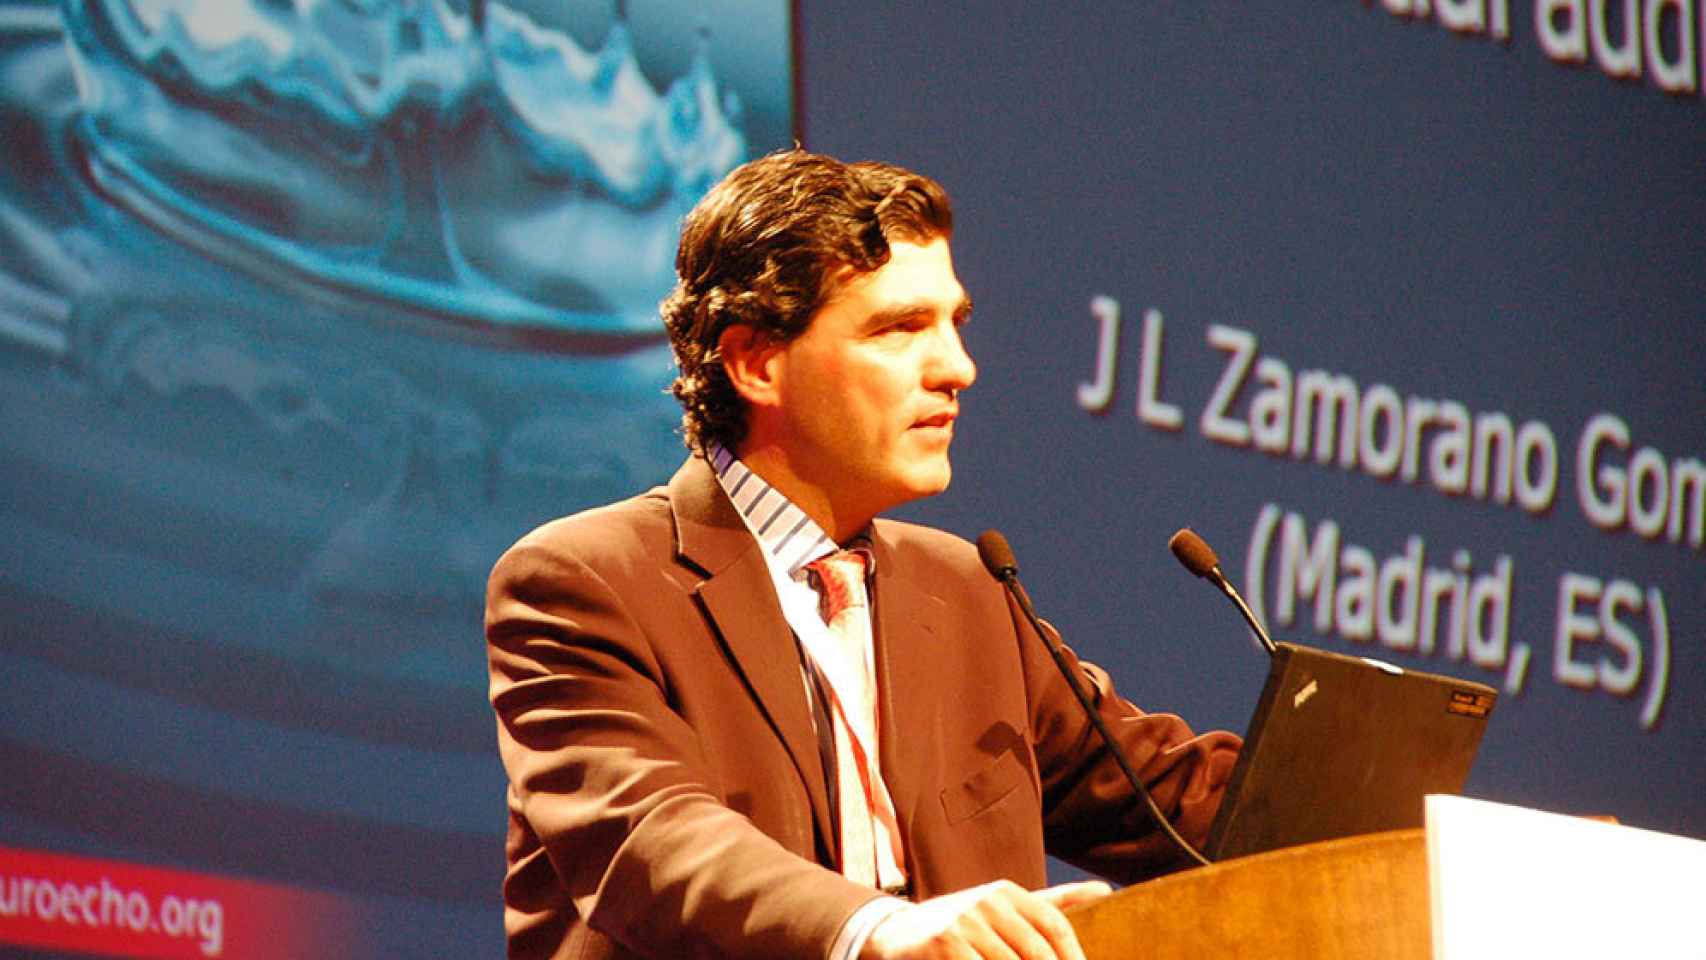 José Luis Zamorano dando la conferencia inaugural de EuroEcho, la reunión anual de la Sociedad Europea de Cardiología.